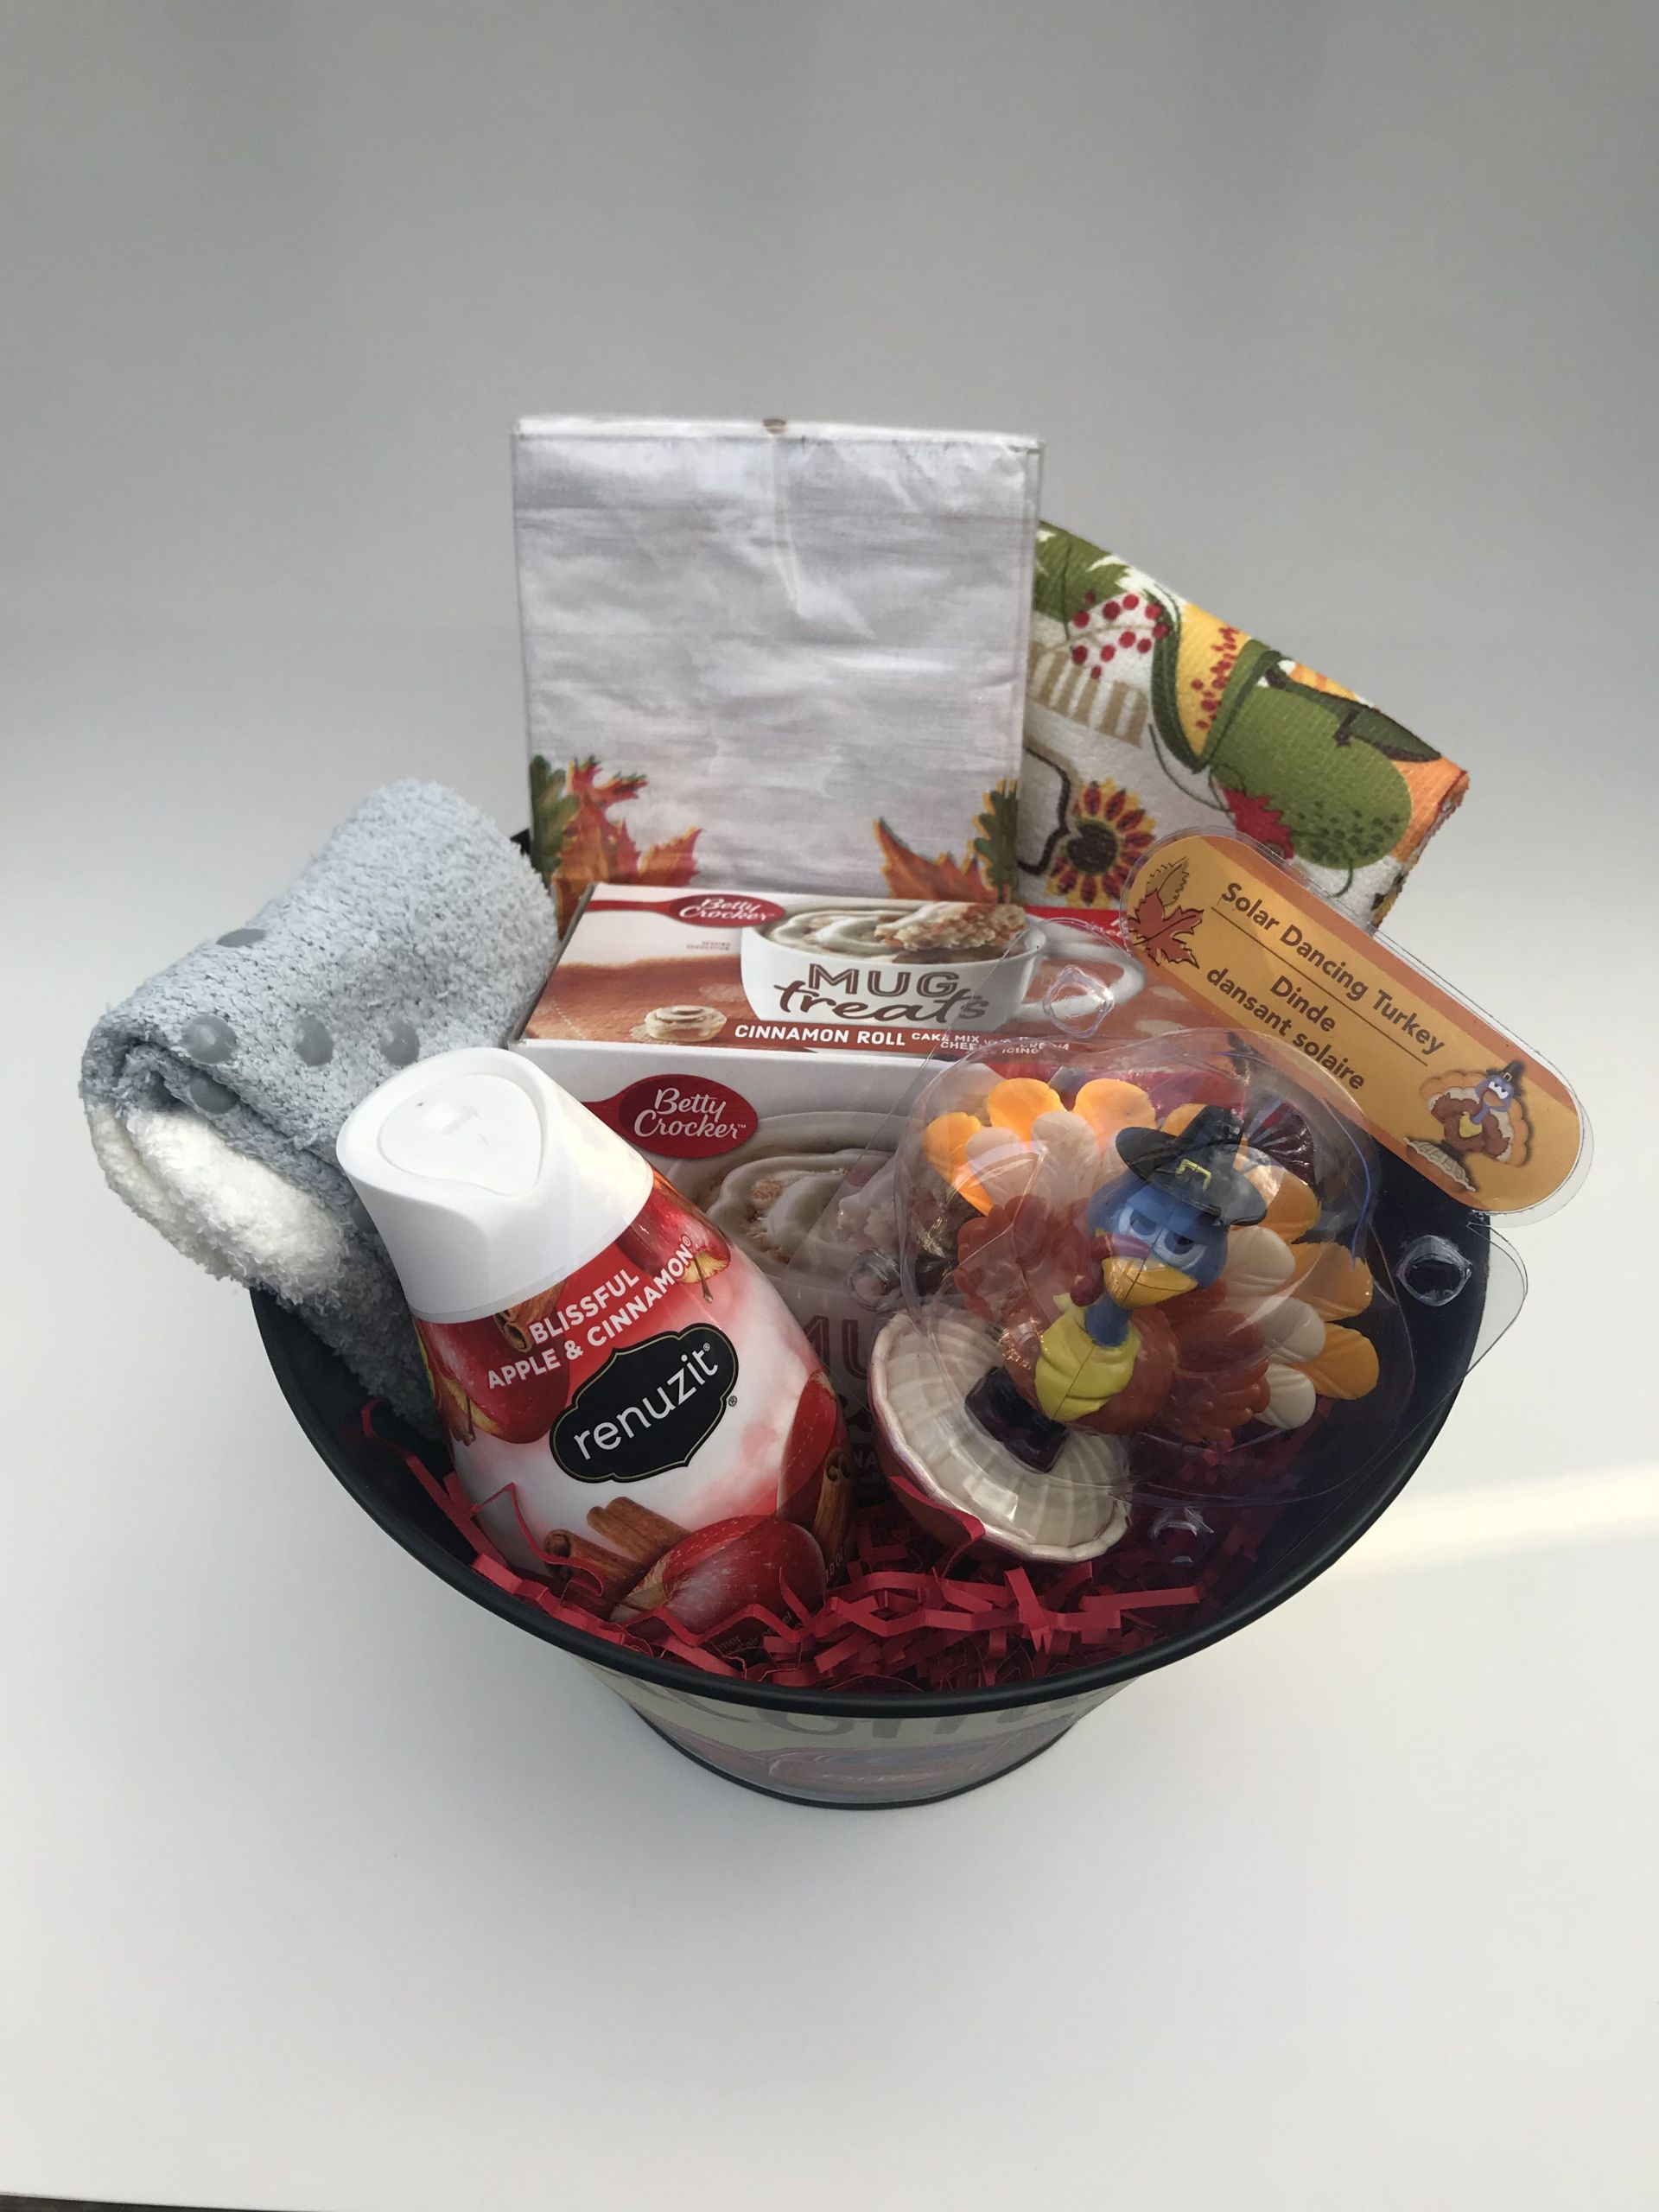 Gift Basket Ideas For Senior Citizens
 Fall Gift Basket Gifts for Senior Citizens Gifts for